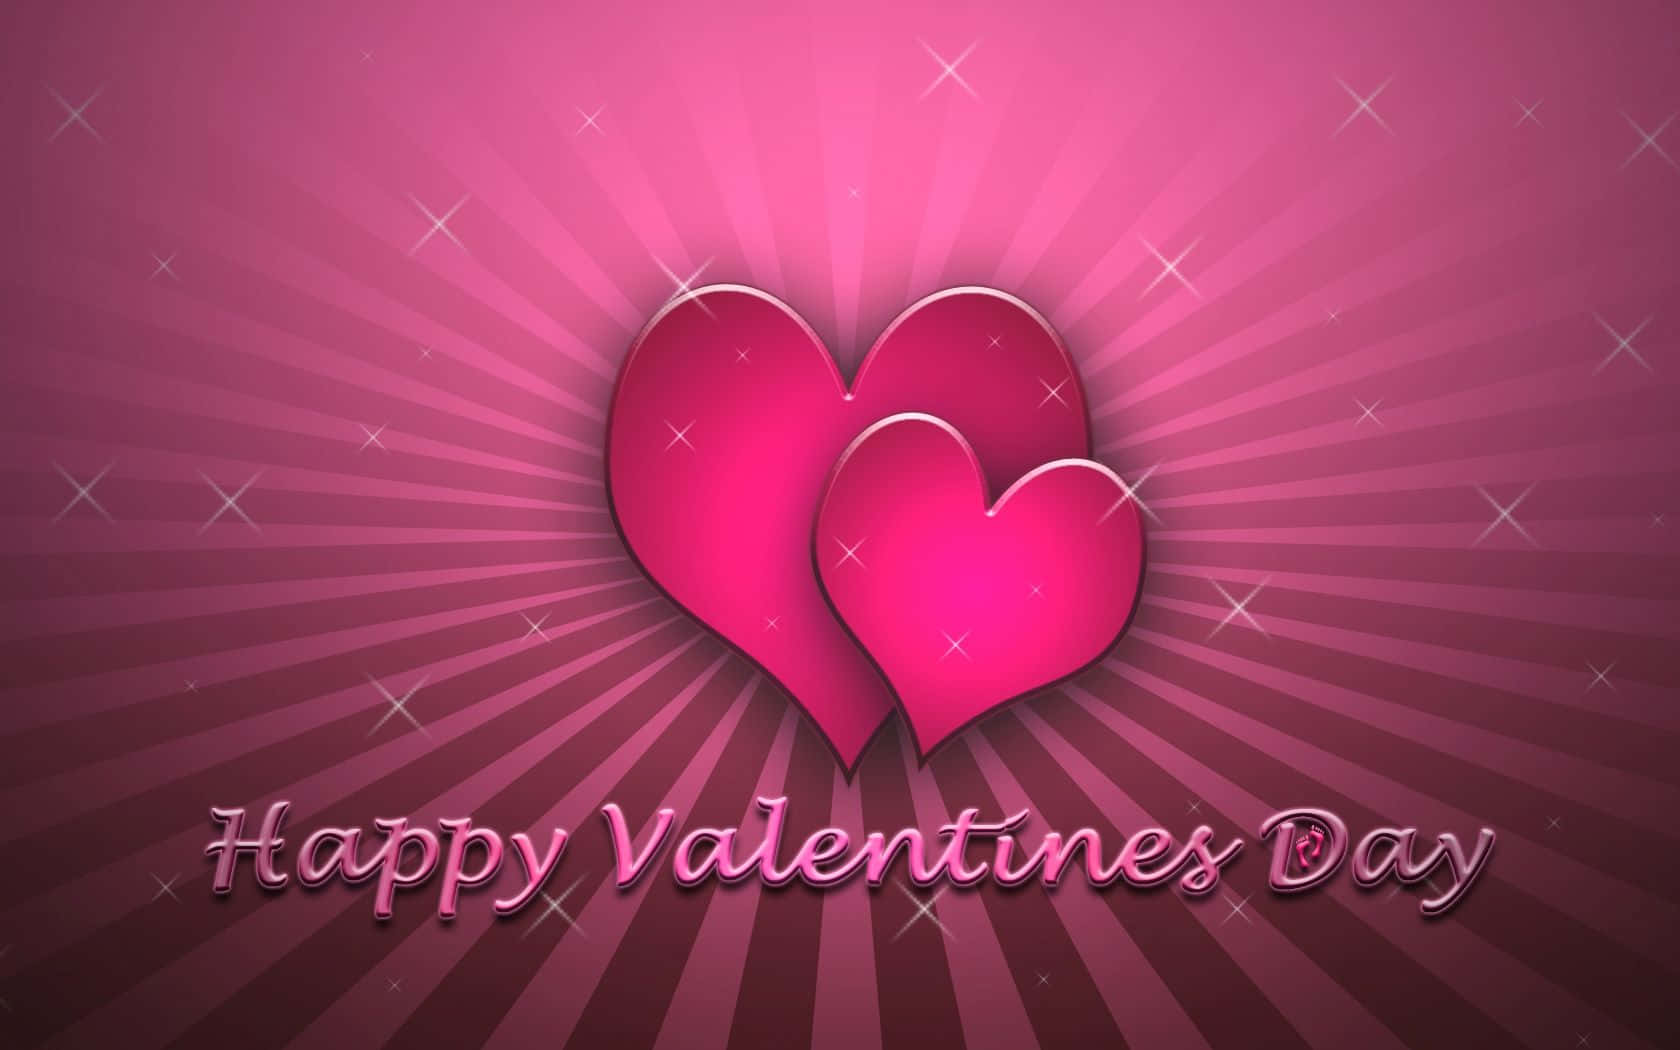 Free Pink Valentine Day Wallpaper Downloads, [100+] Pink Valentine Day  Wallpapers for FREE 